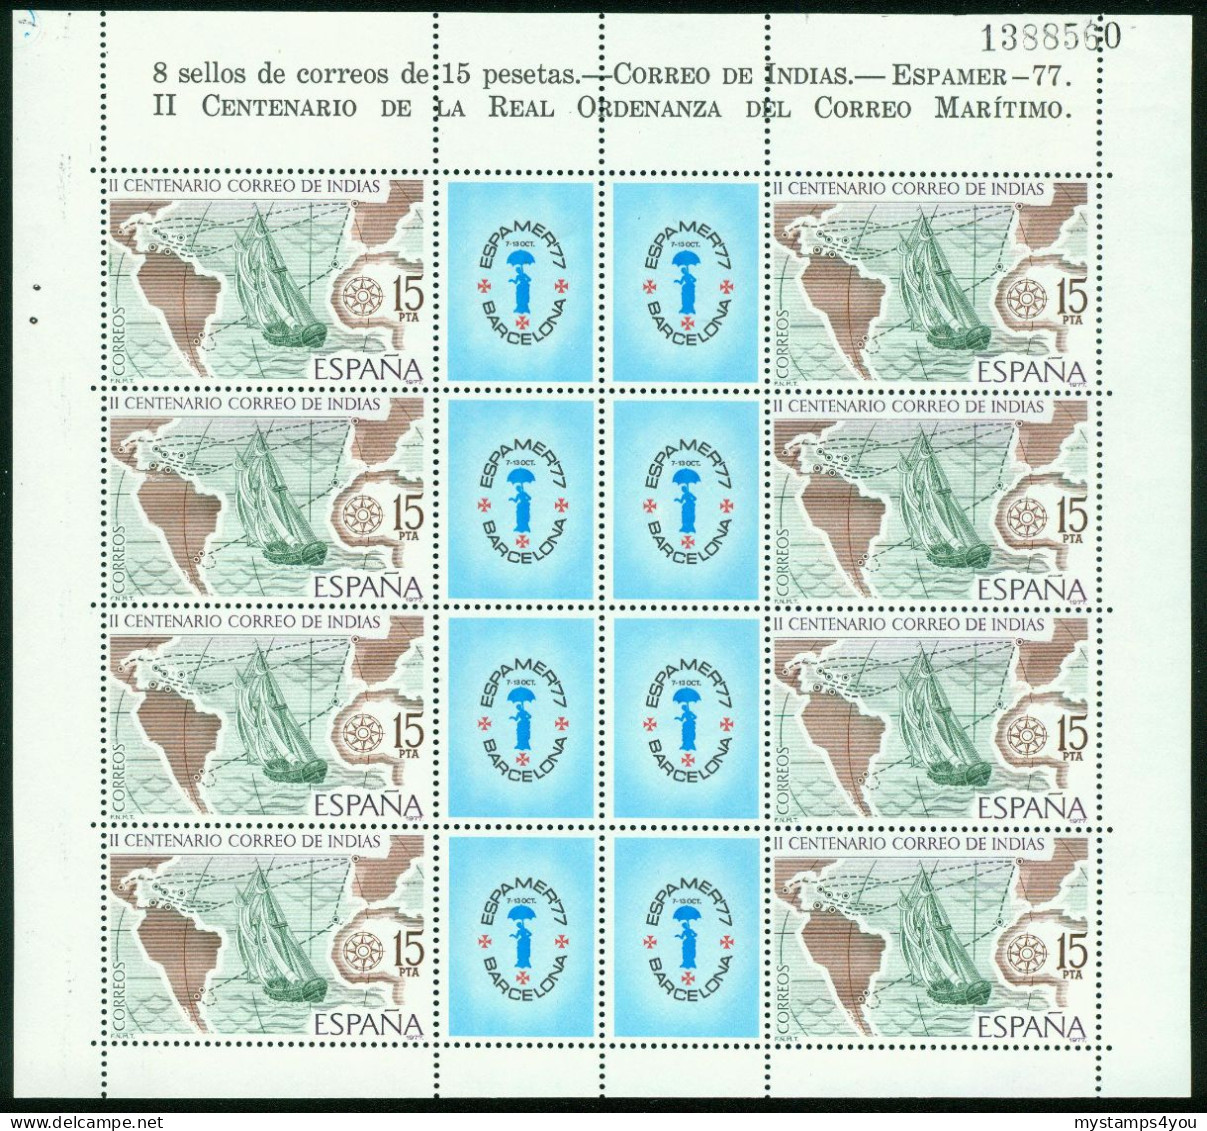 Bm Spain 1977 MiNr 2330 Kleinbogen Sheet MNH | Bicent Of Mail To The Indies. "Espamer 77" Stamp Exn Barcelona #bog-0135 - Blocs & Feuillets